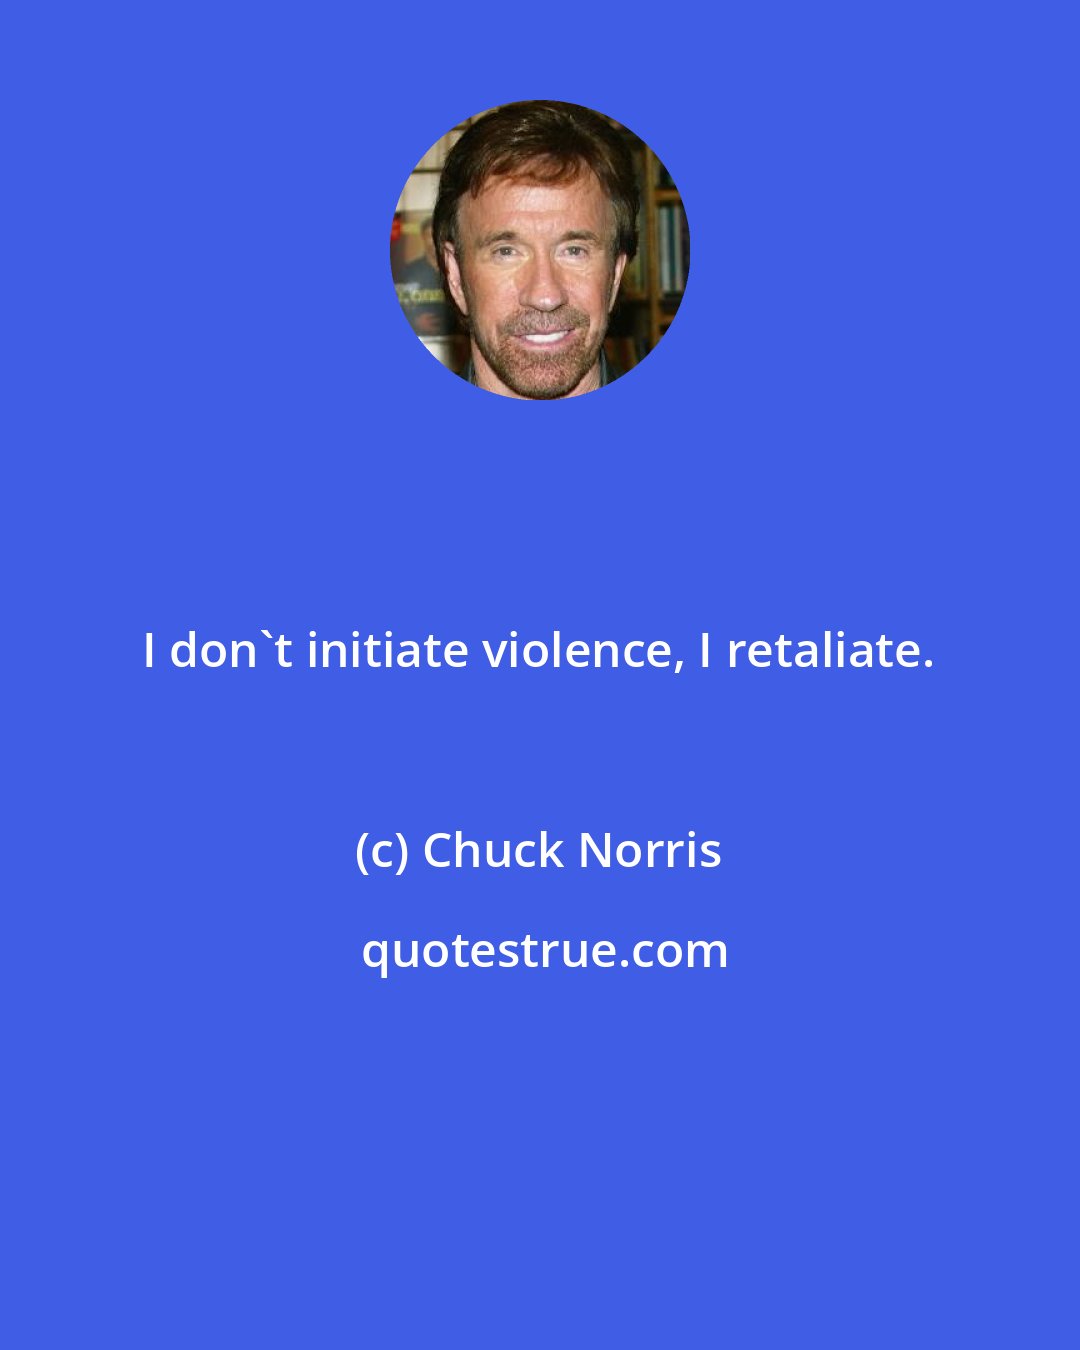 Chuck Norris: I don't initiate violence, I retaliate.